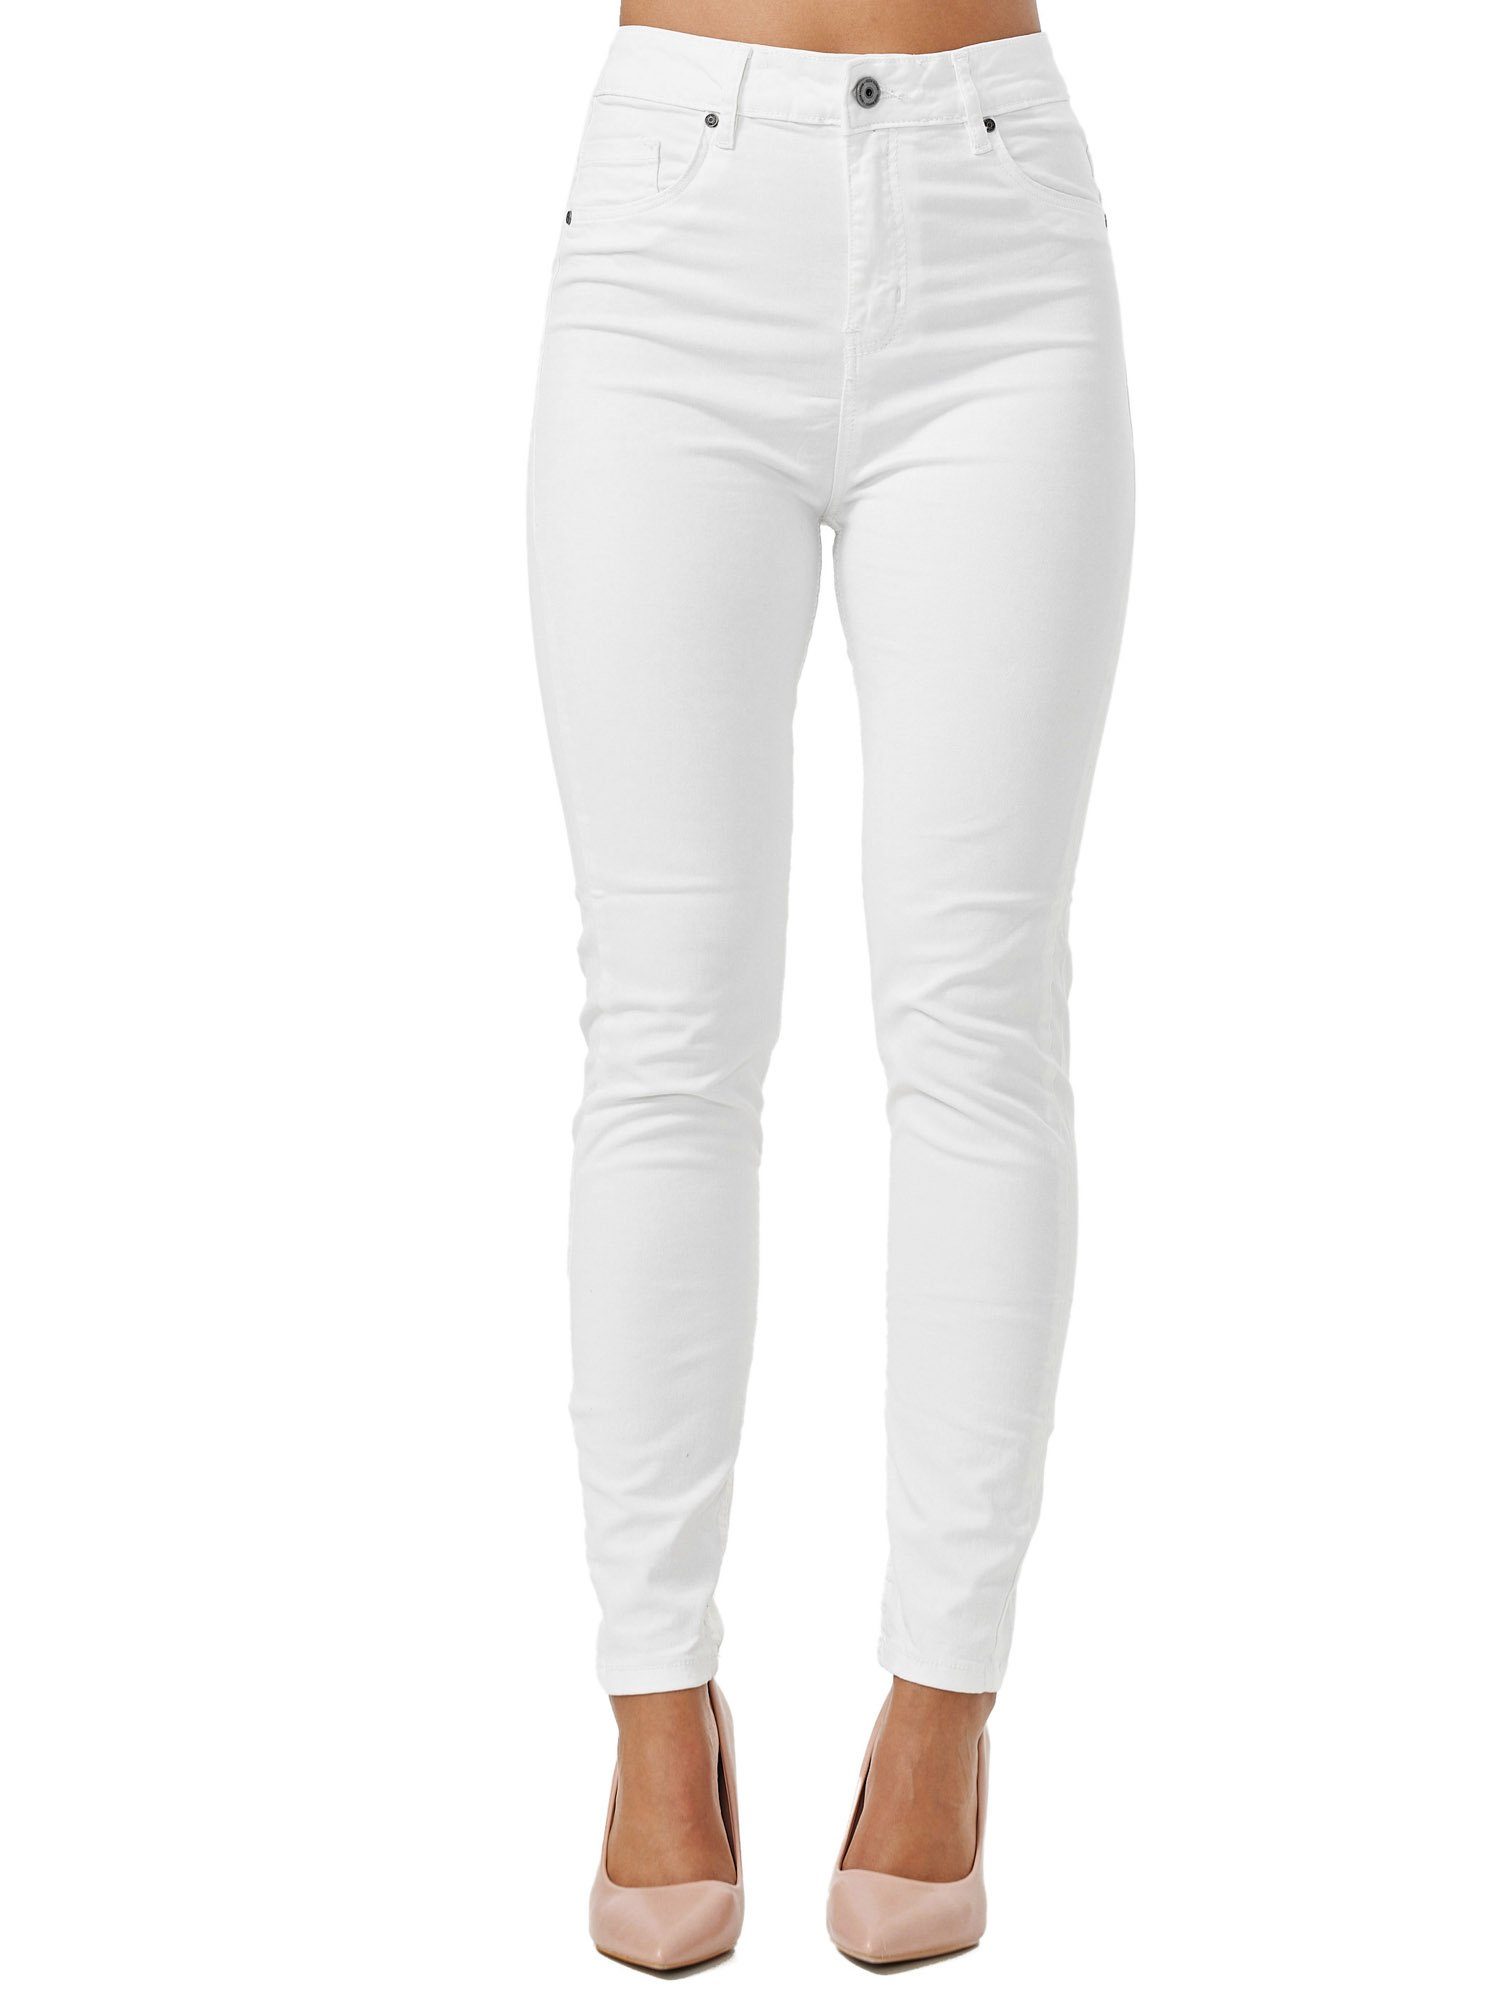 Tazzio Skinny-fit-Jeans F103 Damen High Rise Jeanshose weiß